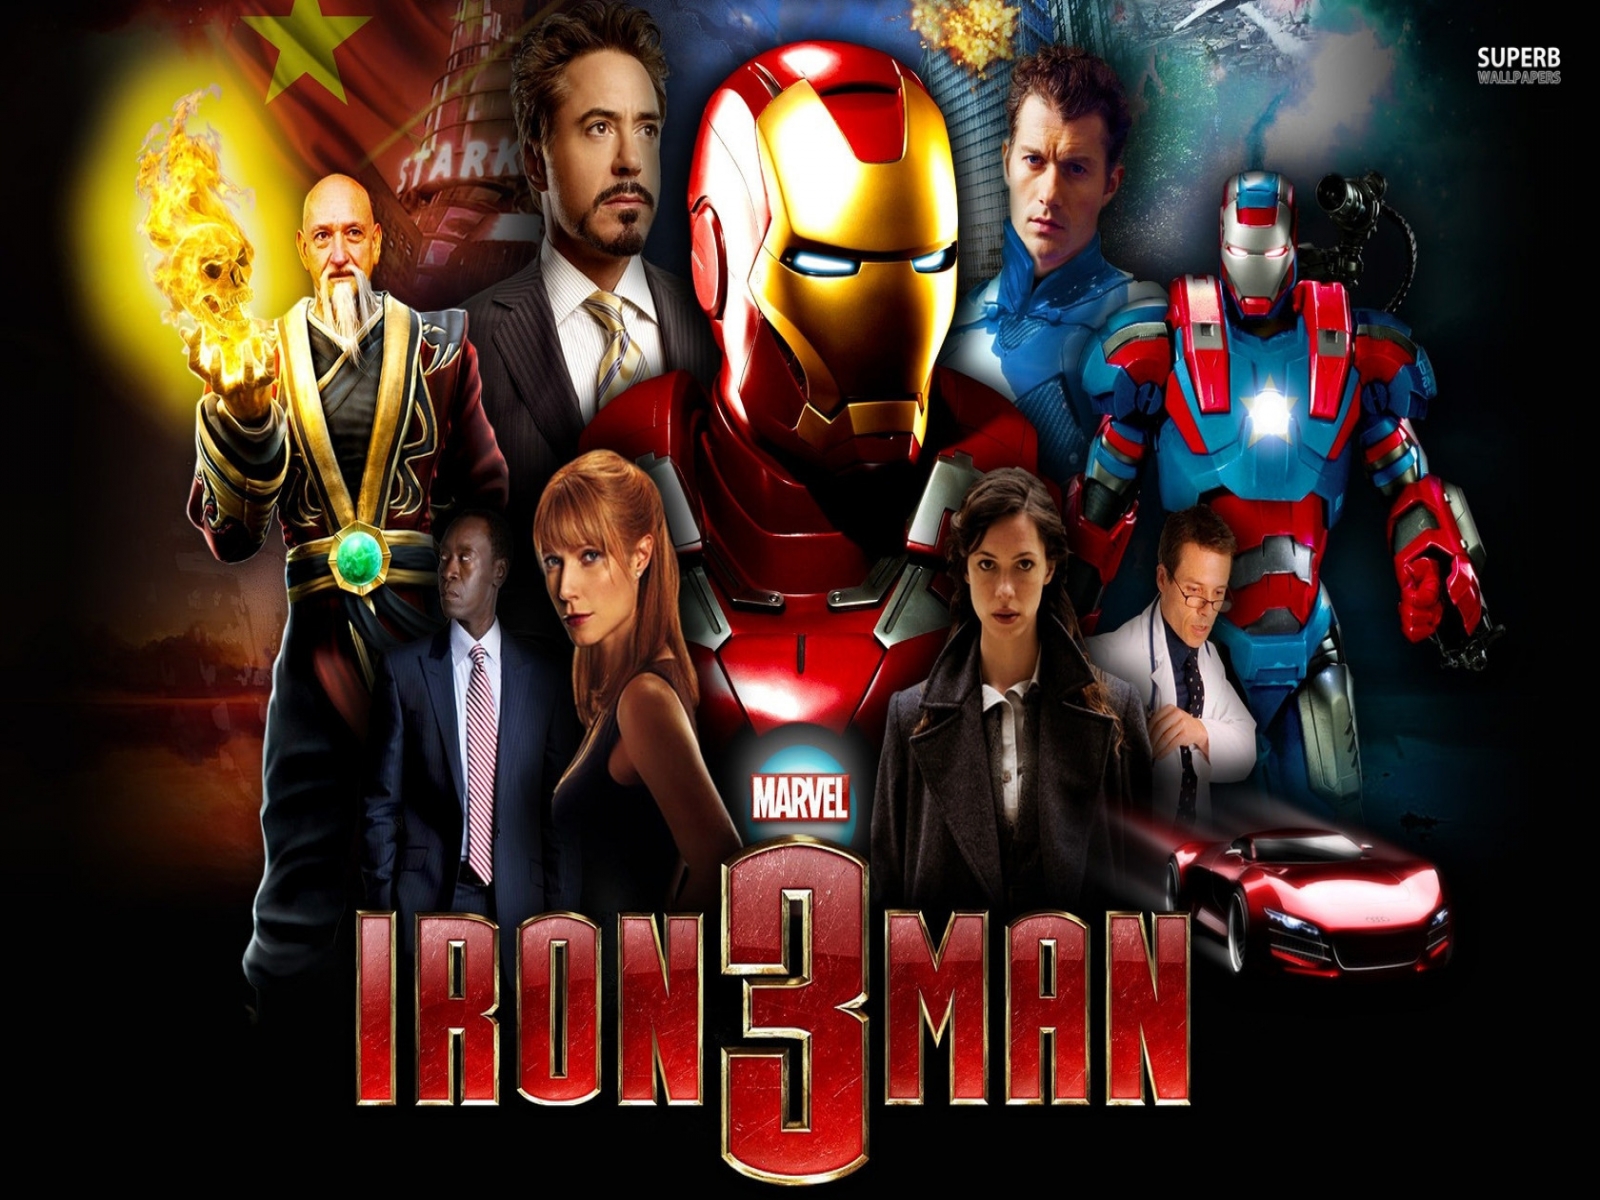 Iron Man 3 HD Wallpapers 2013 | Best Wallpapers Fan|Download Free ...